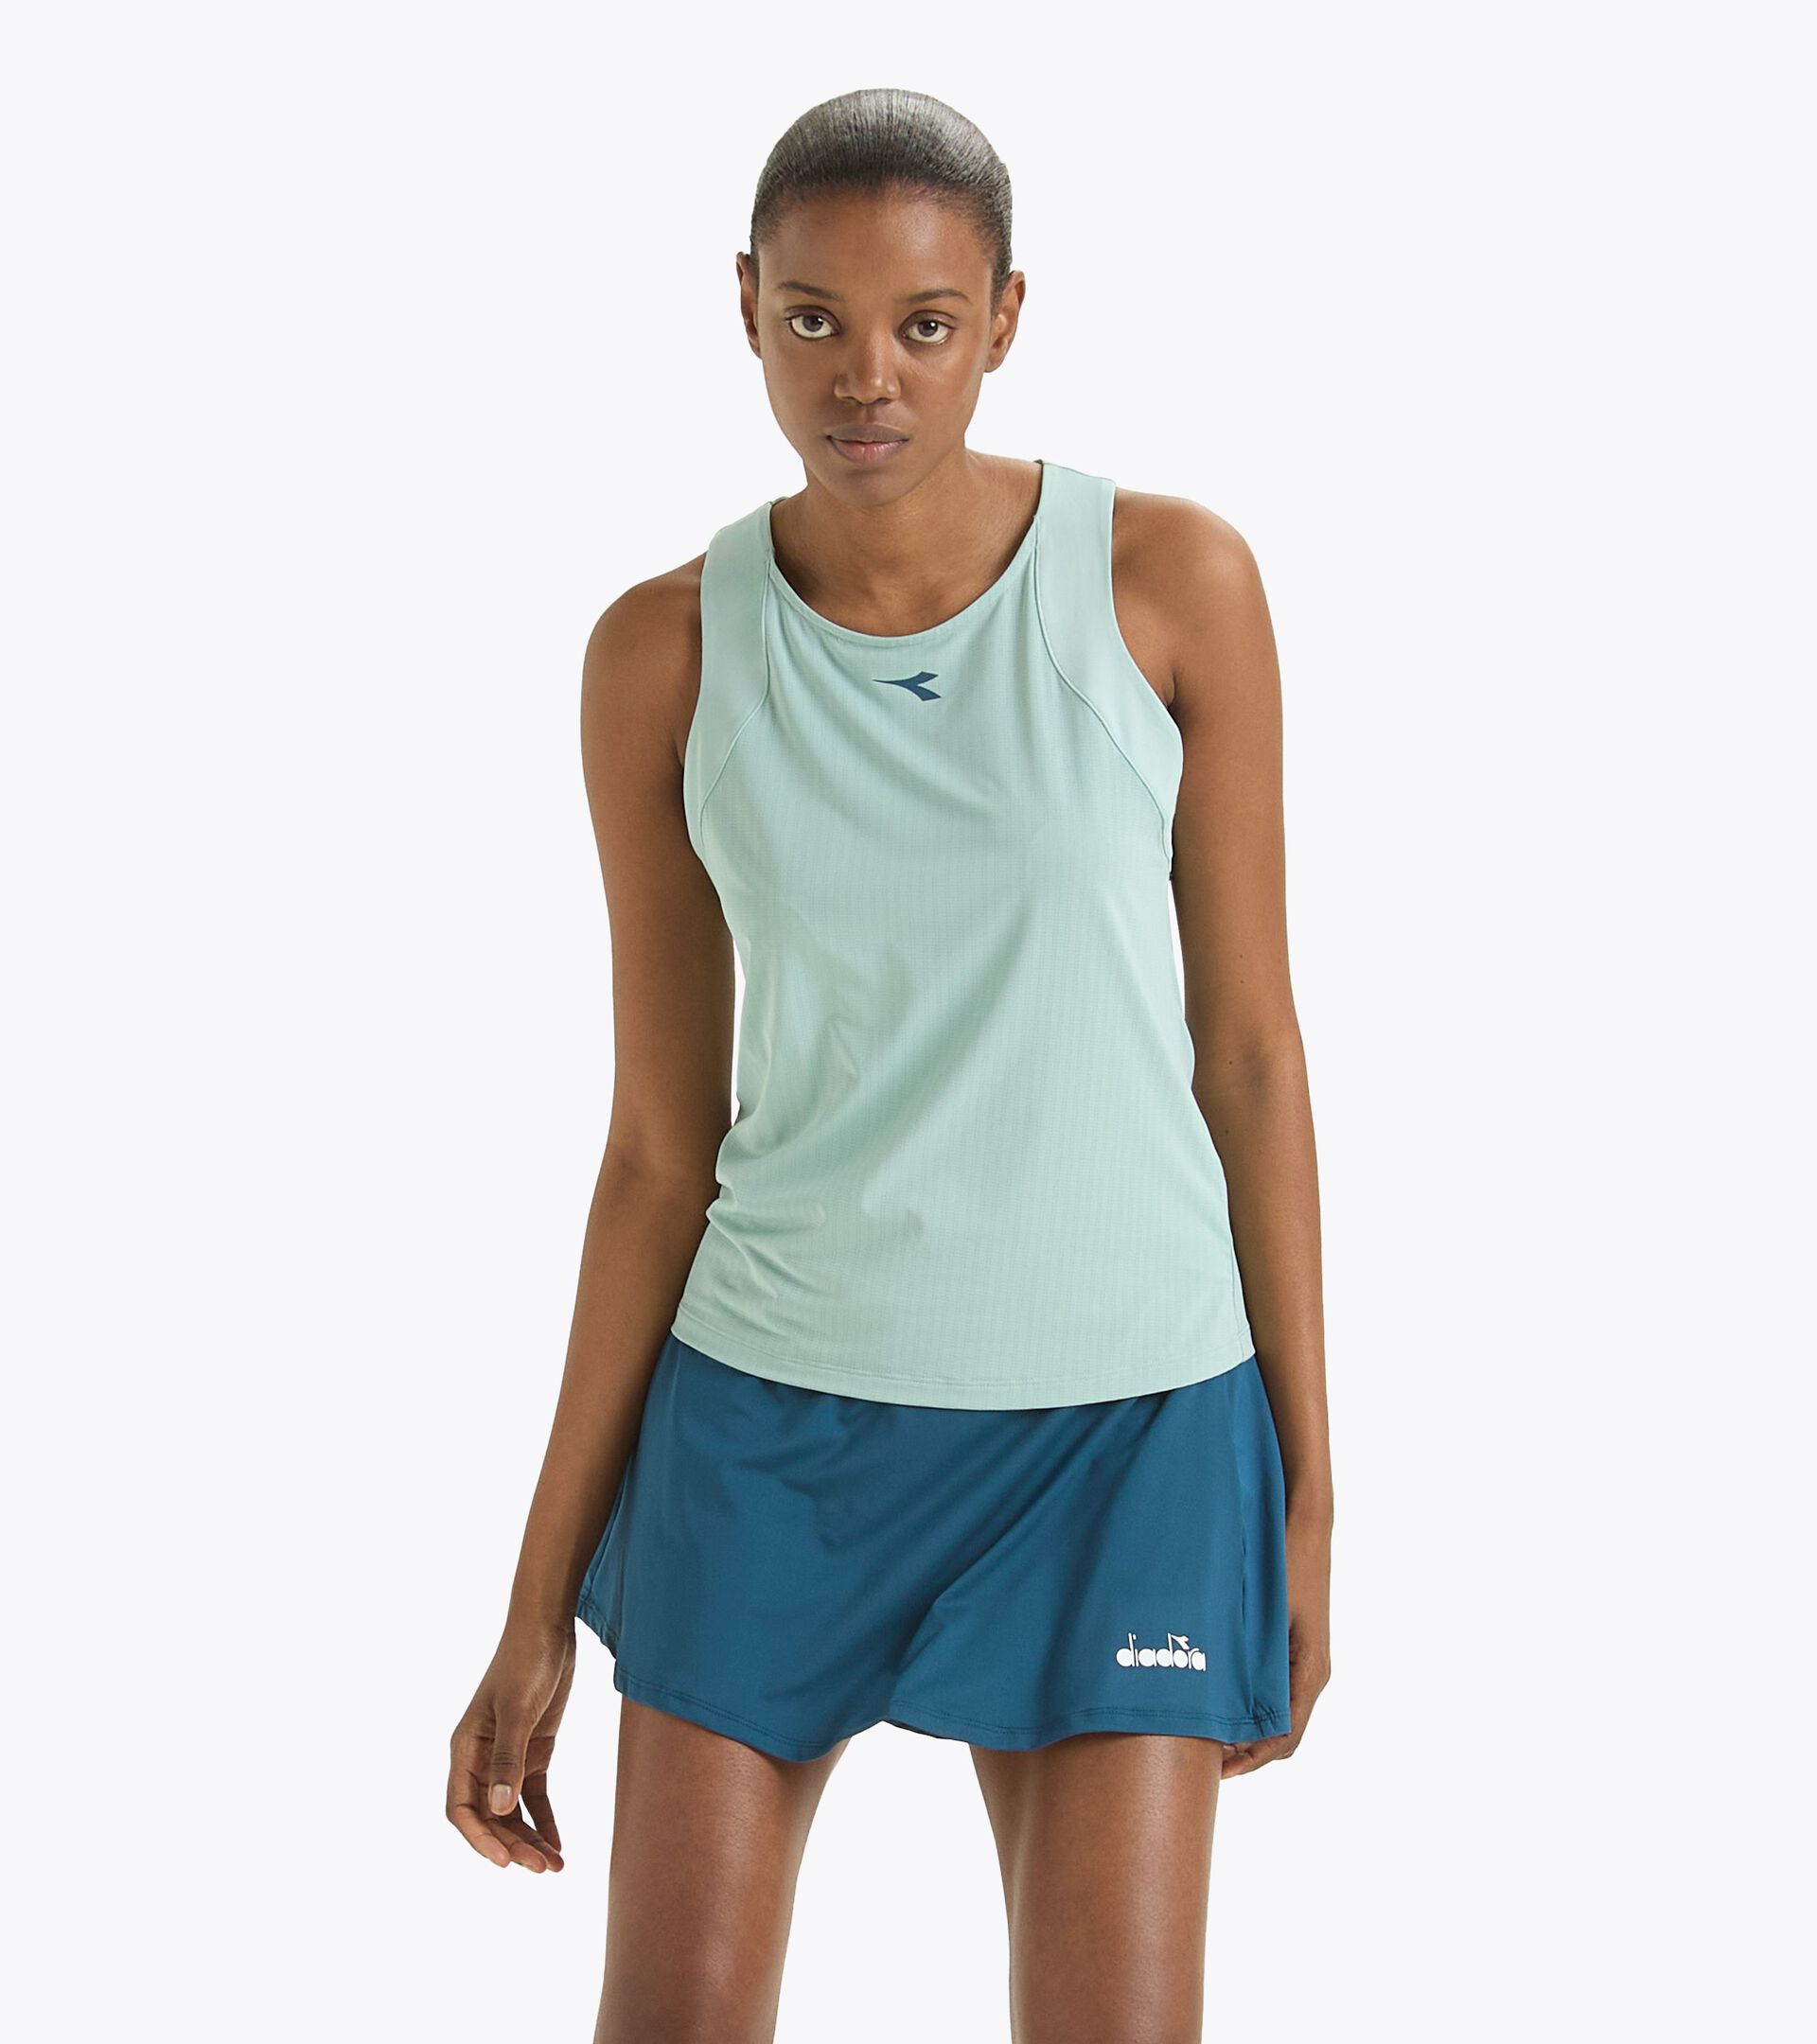 Camiseta sin mangas de tenis con espalda estilo nadadora - Competición - Mujer
 L. TANK ICON OLAS SPRAY - Diadora